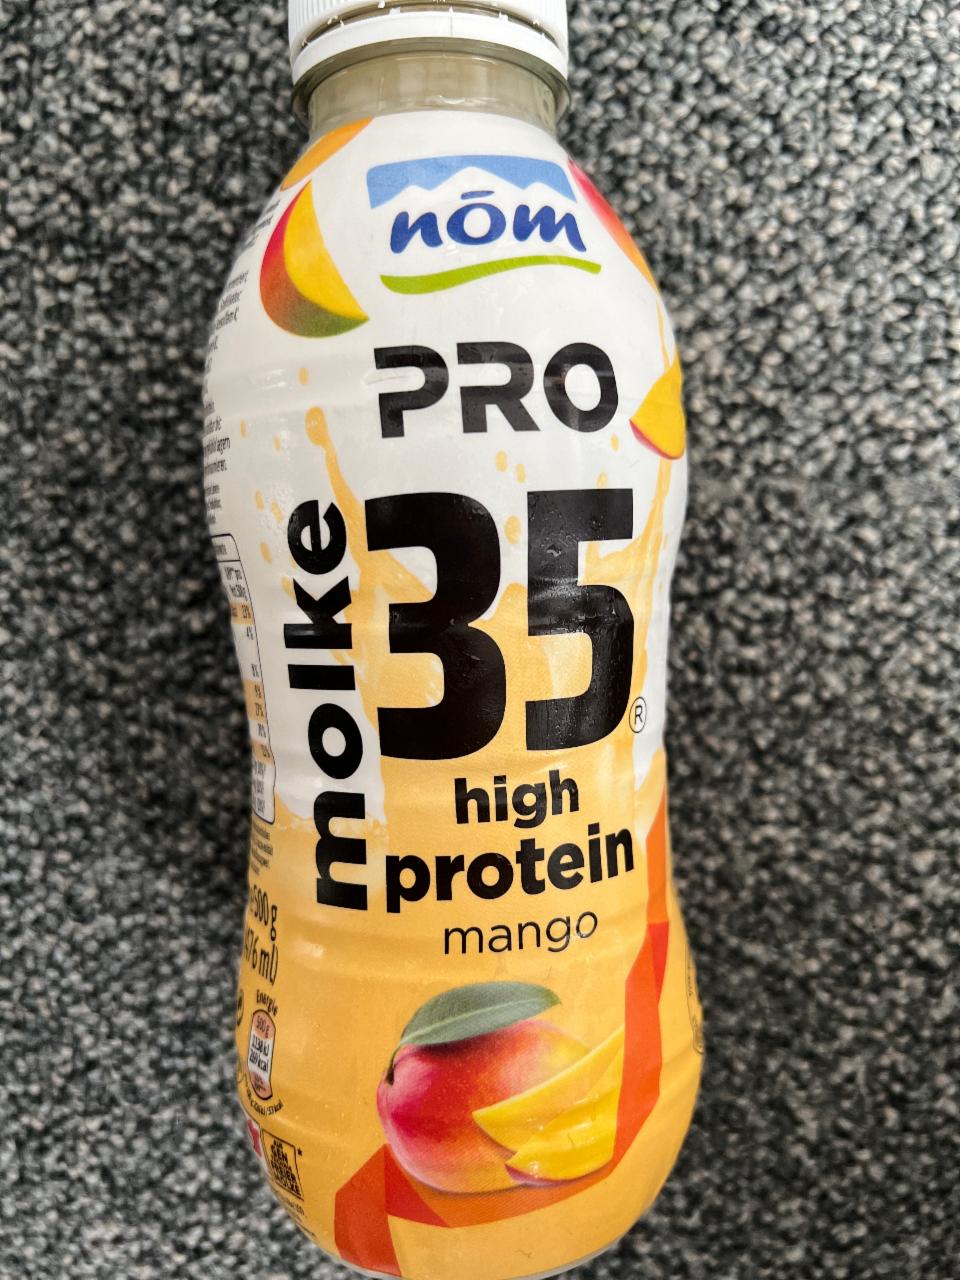 Fotografie - High protein mango drink Nóm